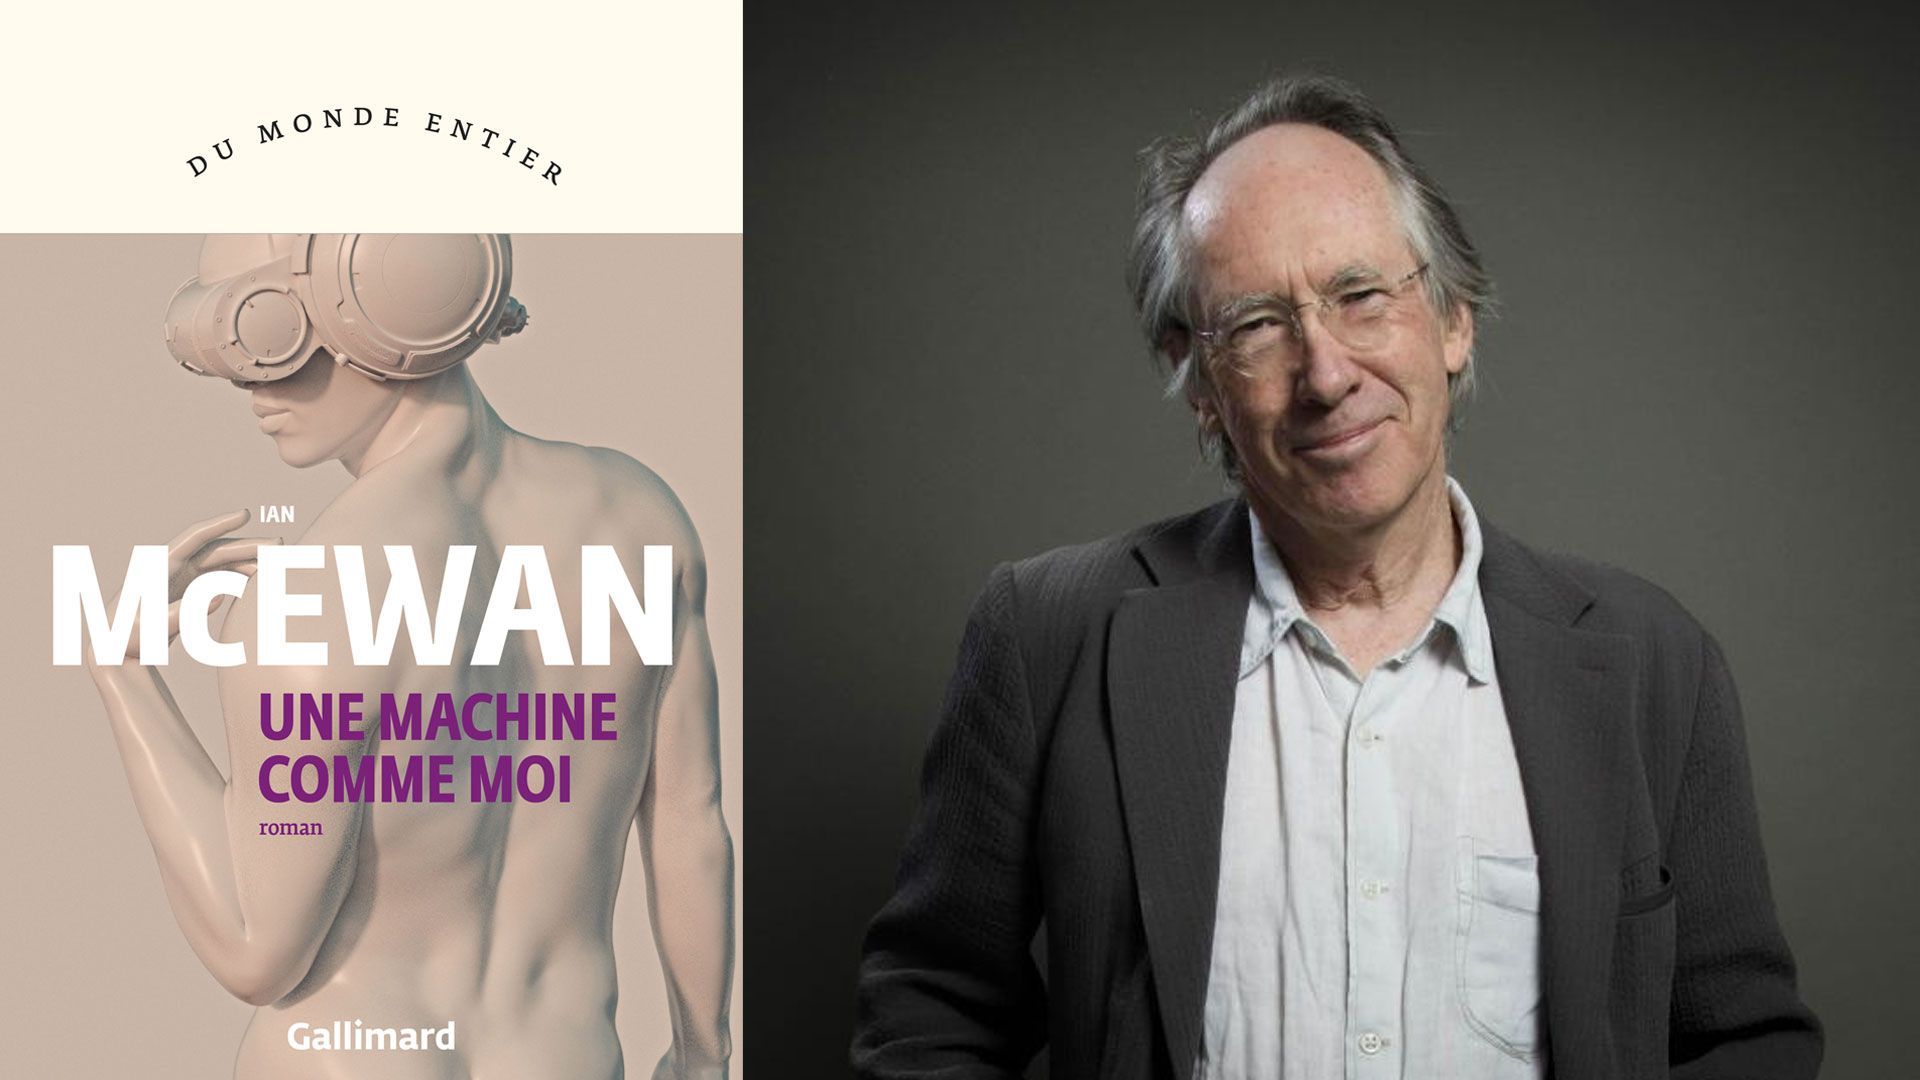 " Une machine comme moi " d'Ian McEwan, une dystopie sur l'intelligence artificielle